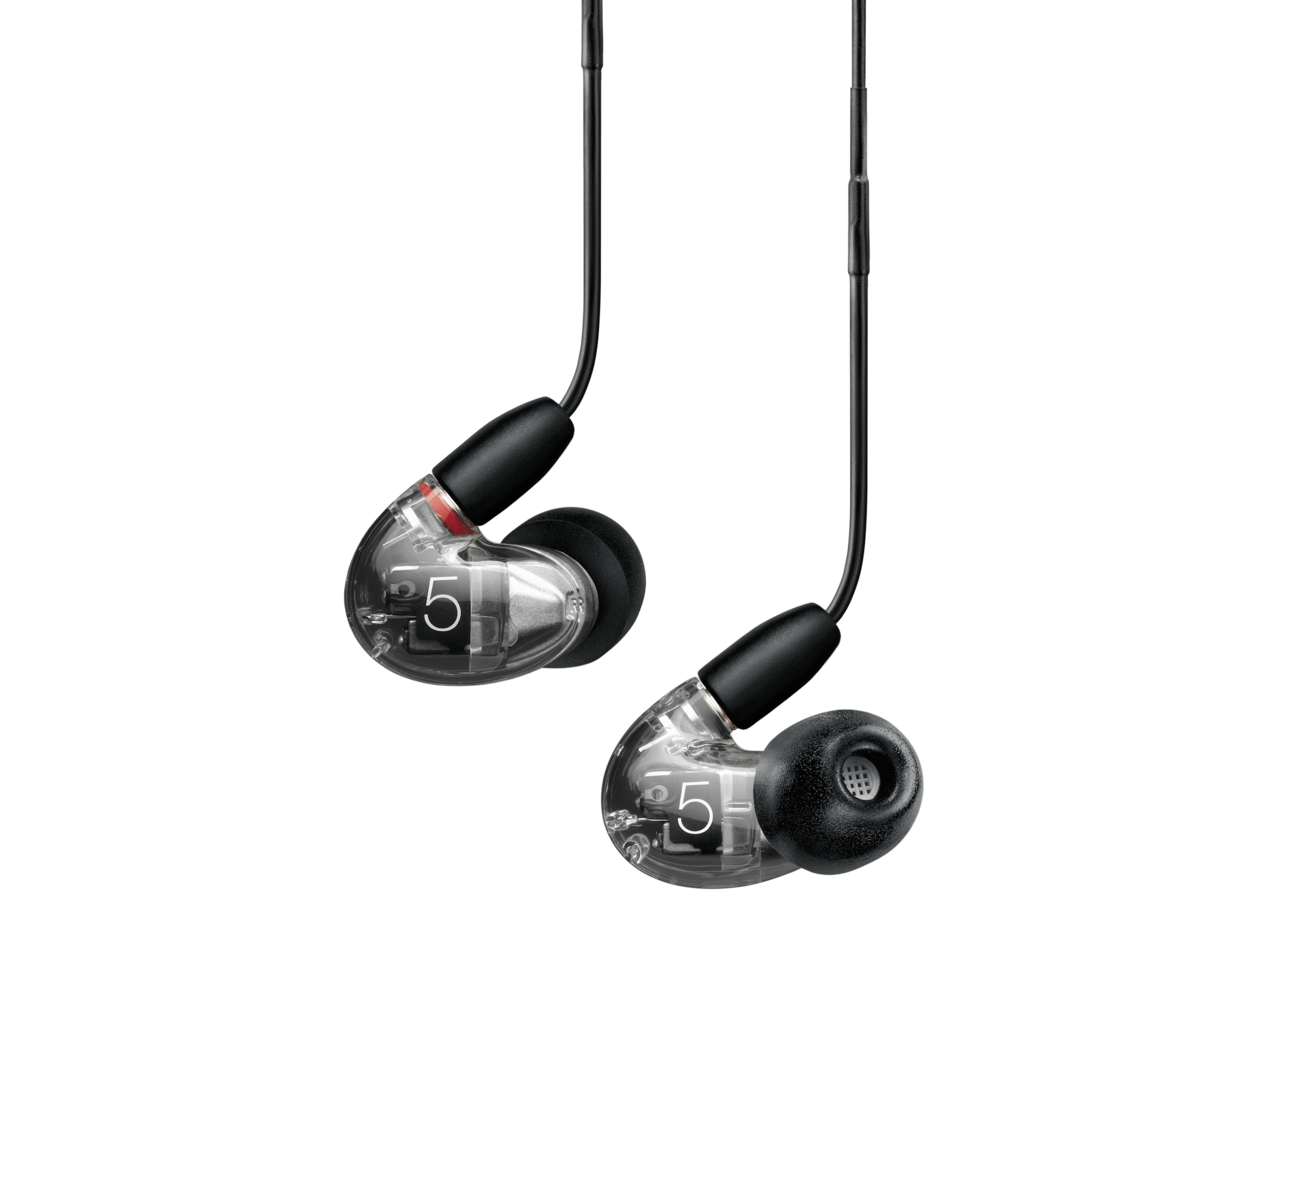 Shure Aonic 5 - Auriculares intrauditivos profesionales con control remoto y micrófono - Devueltos